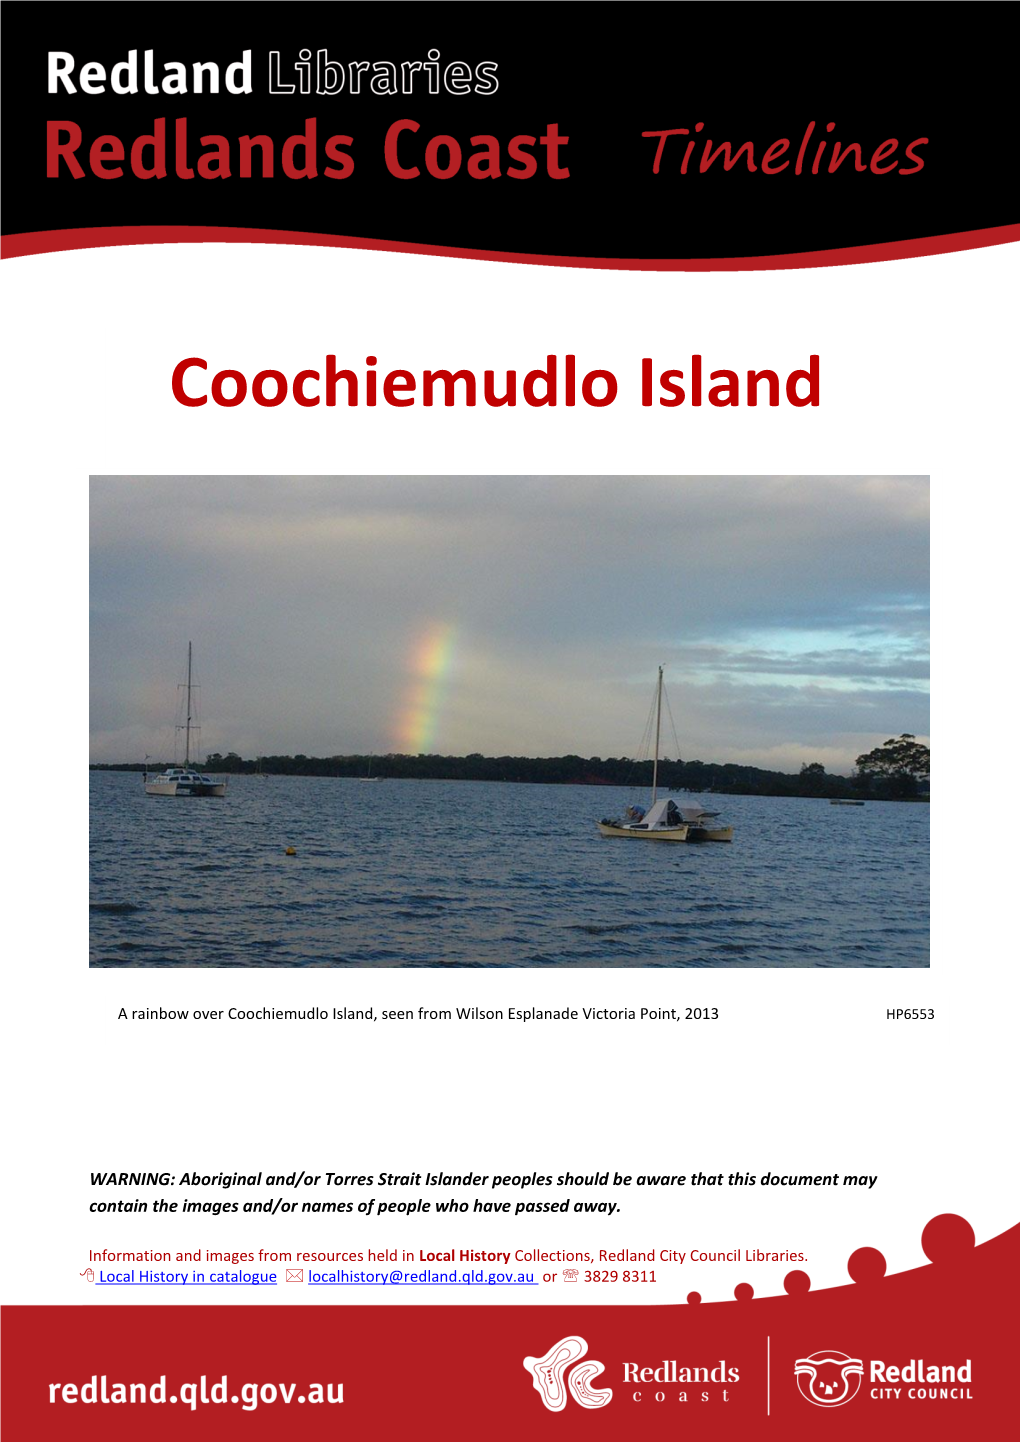 Coochiemudlo Island